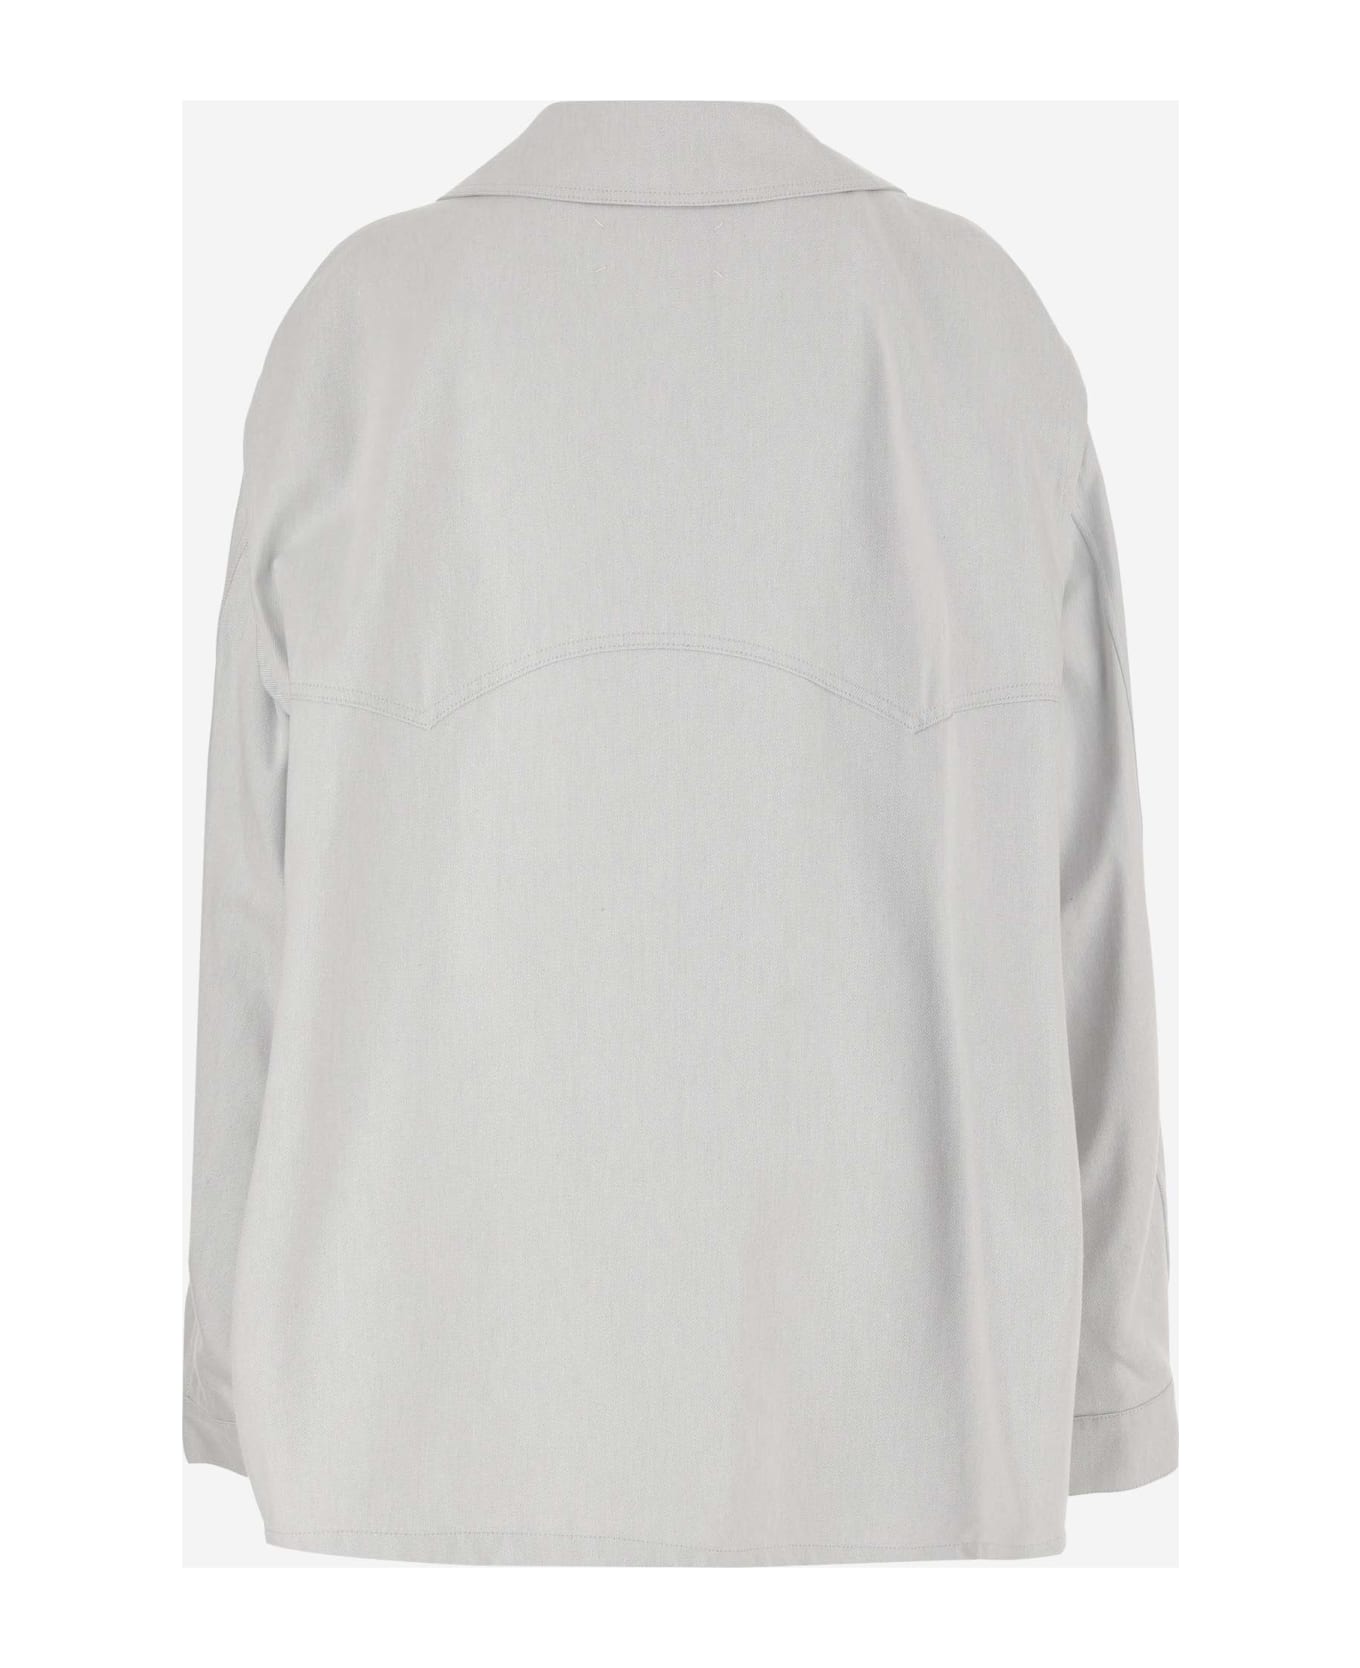 Maison Margiela Cotton Jacket With Oversize Collar - Light Grey